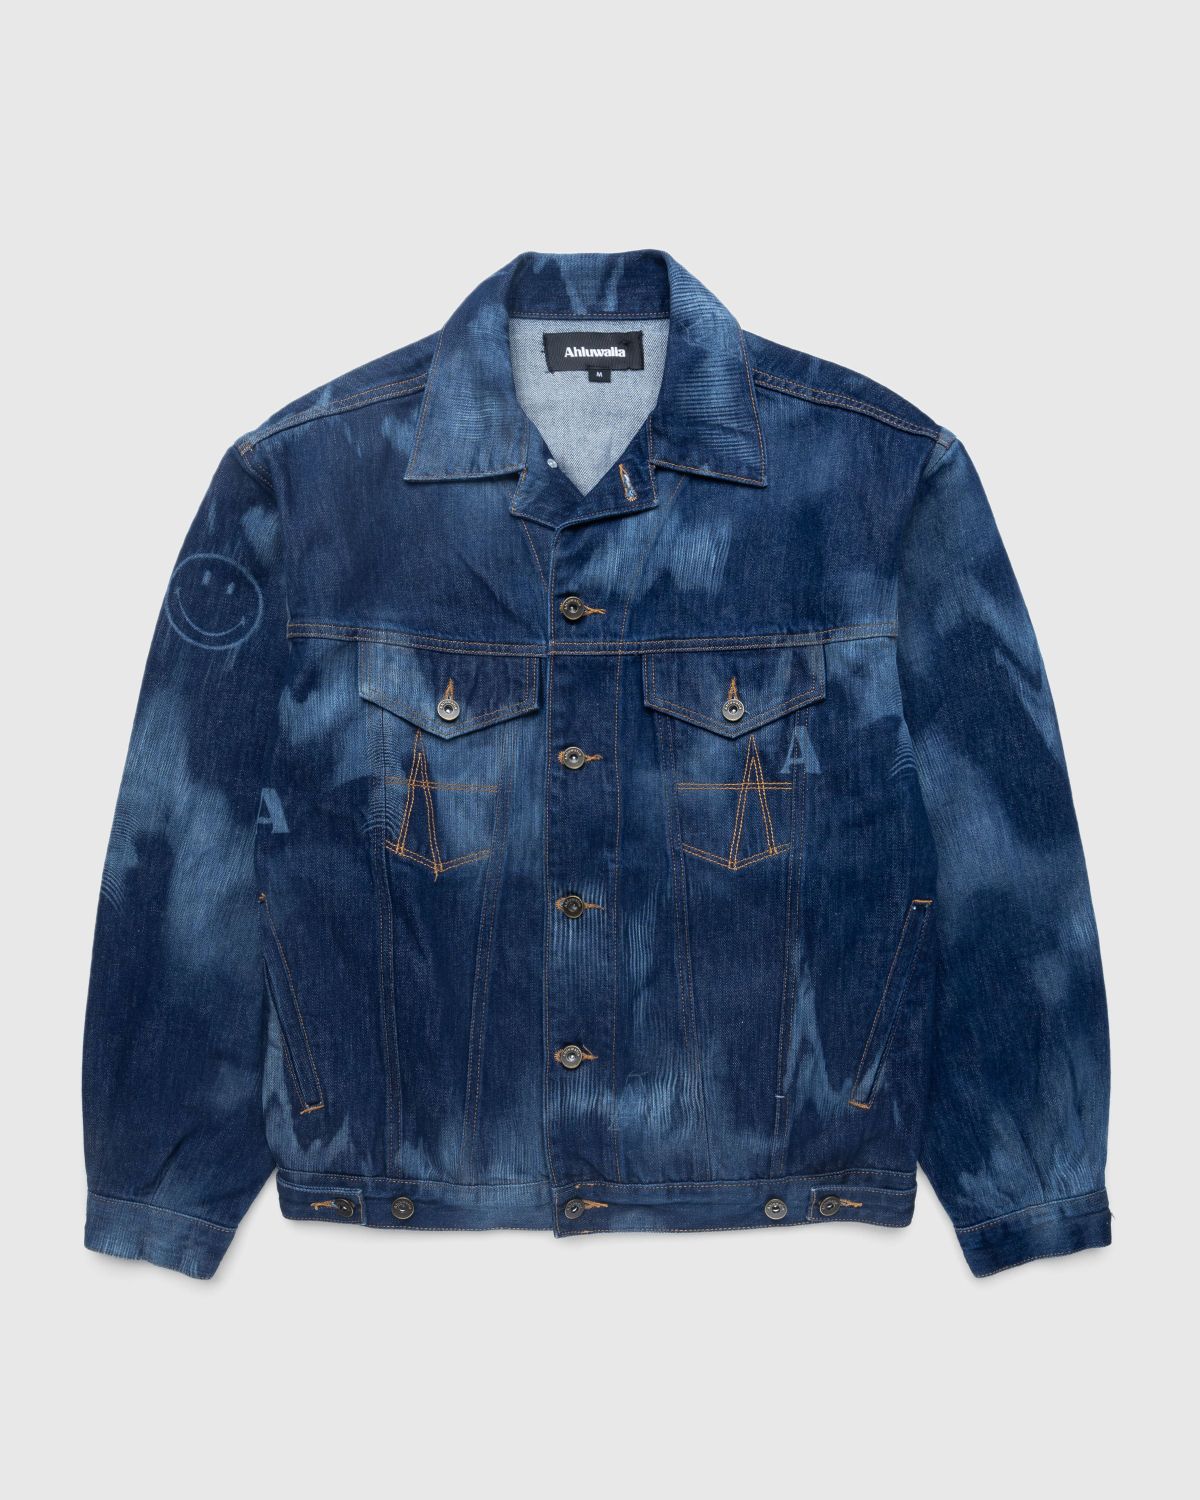 Ahluwalia – Signature Denim Jacket Indigo - Outerwear - Blue - Image 1